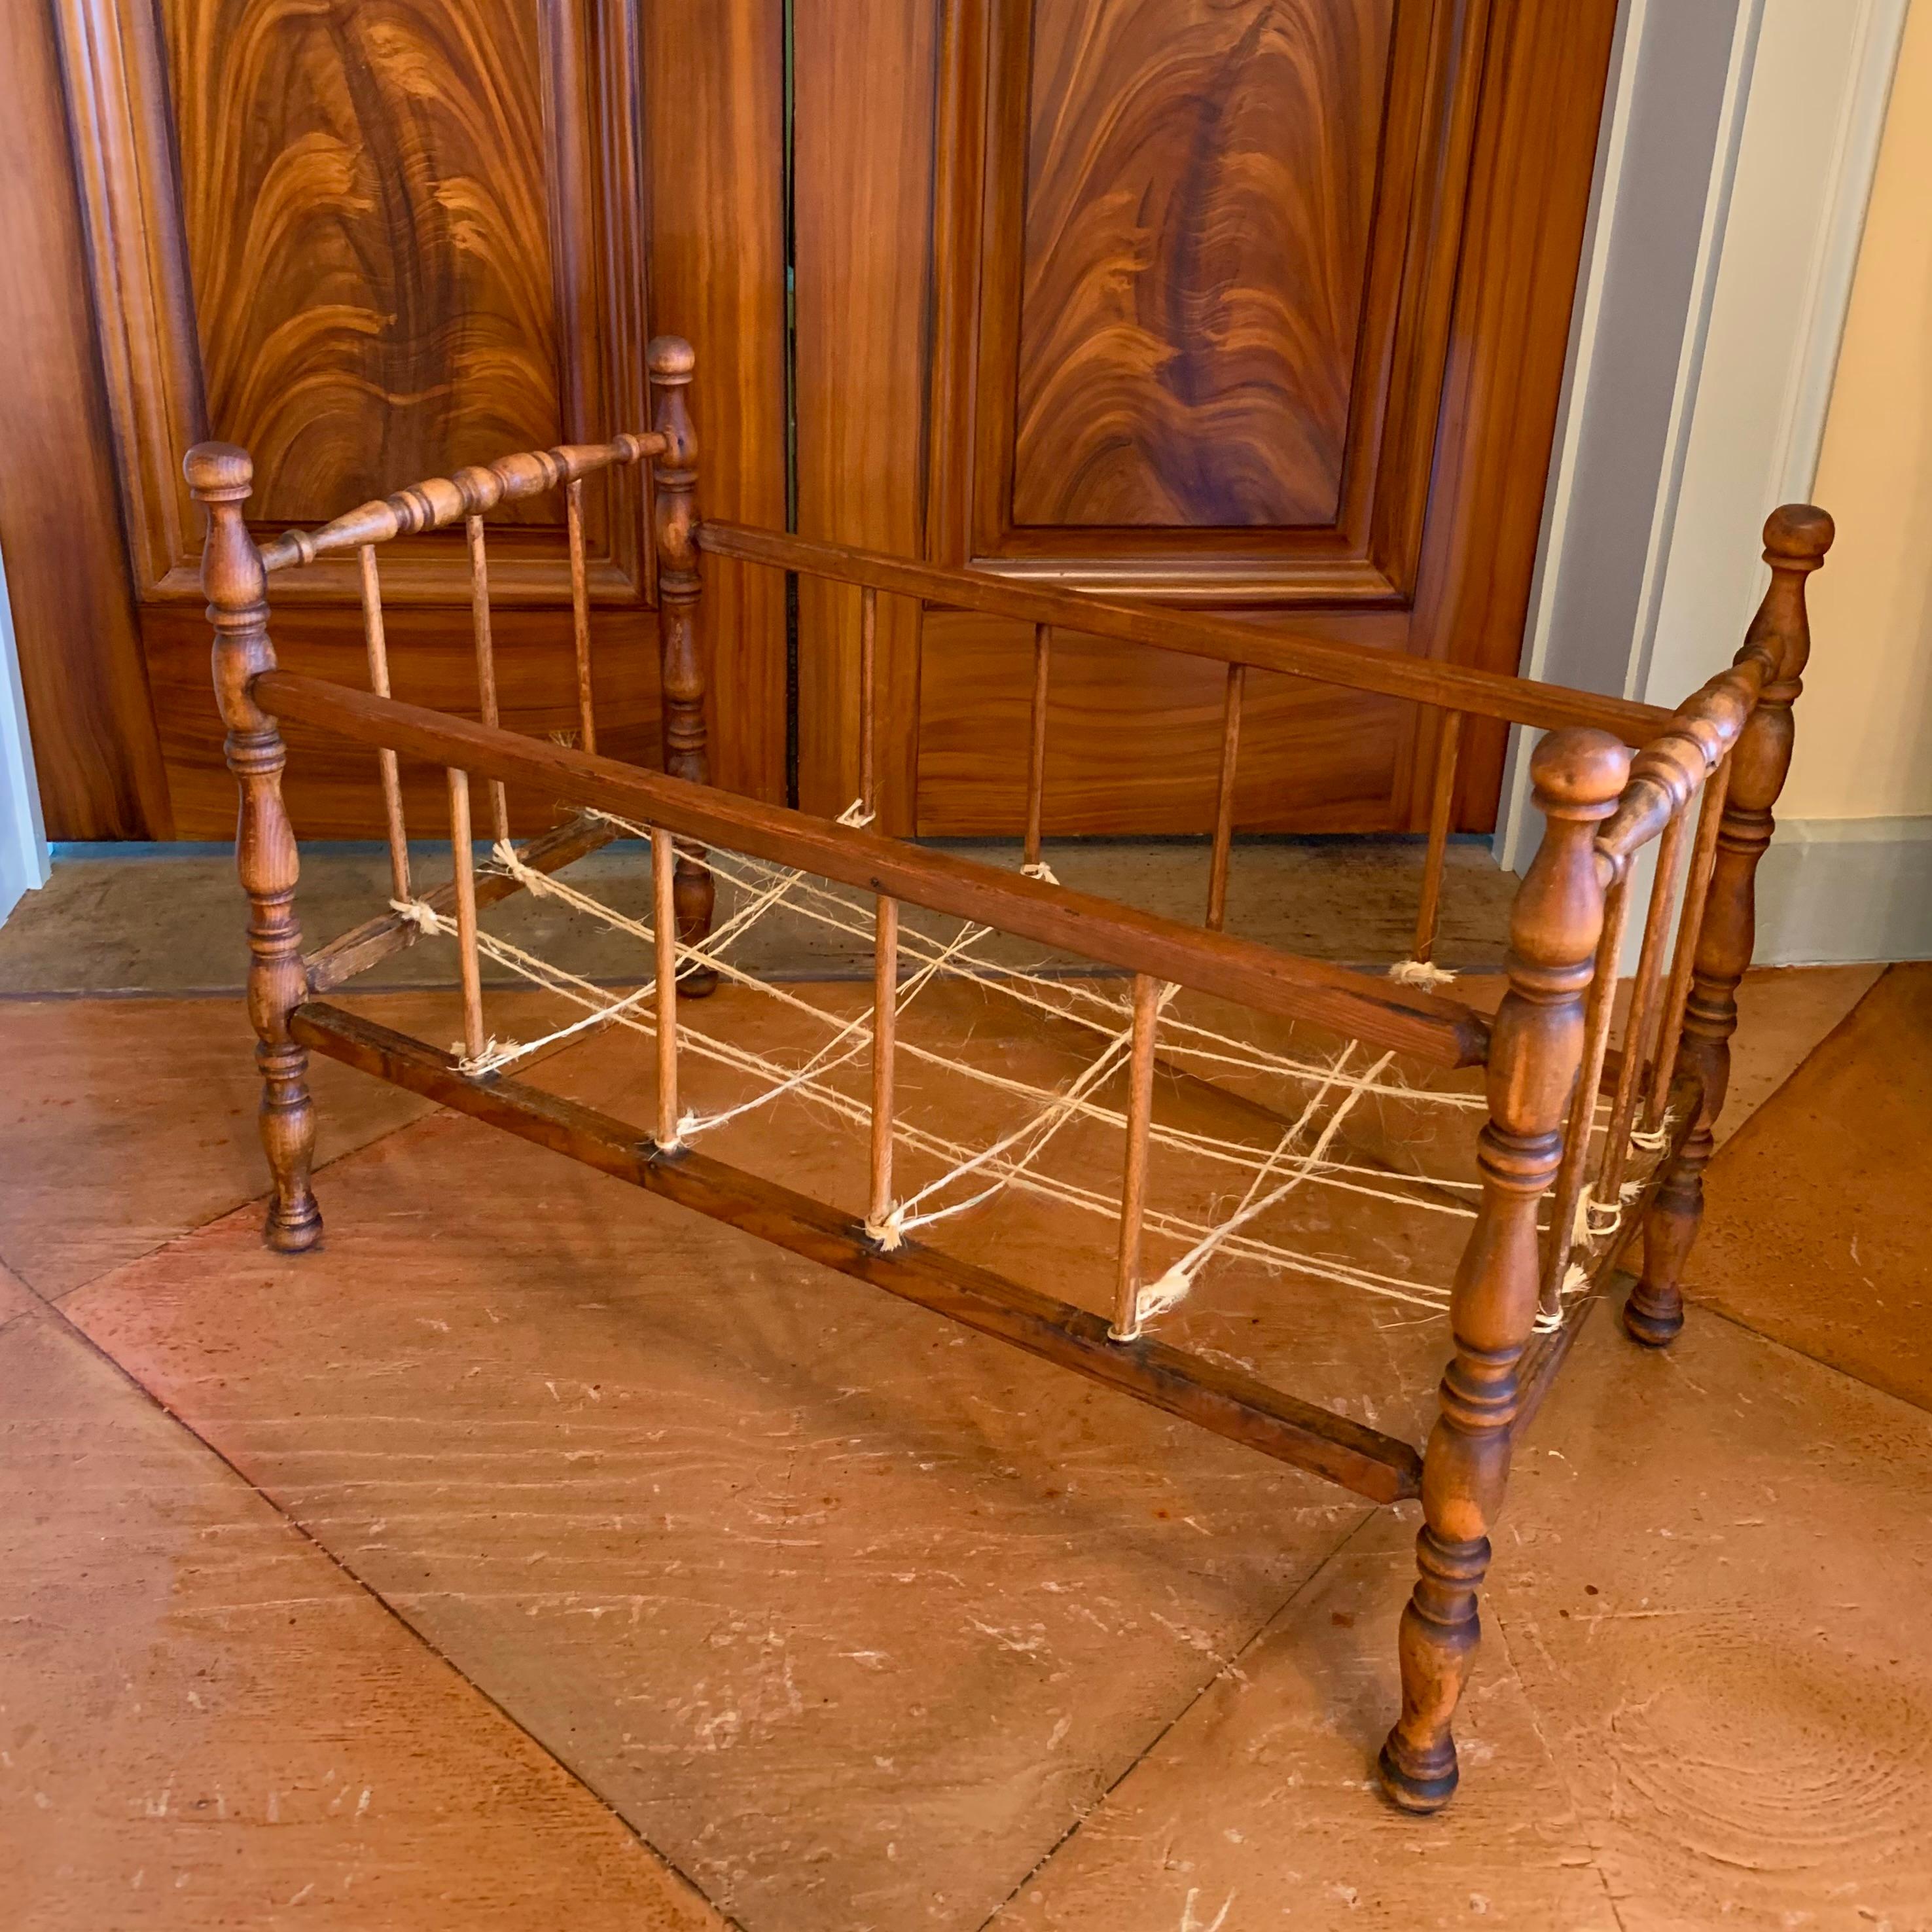 Ein aus Ahorn und Kiefer gedrechseltes Puppenbett aus der Mitte des 19. Jahrhunderts mit schönen Proportionen, mit detaillierten Drechselarbeiten an den vier Bettpfosten. Der Boden ist mit natürlichem Bindfaden 